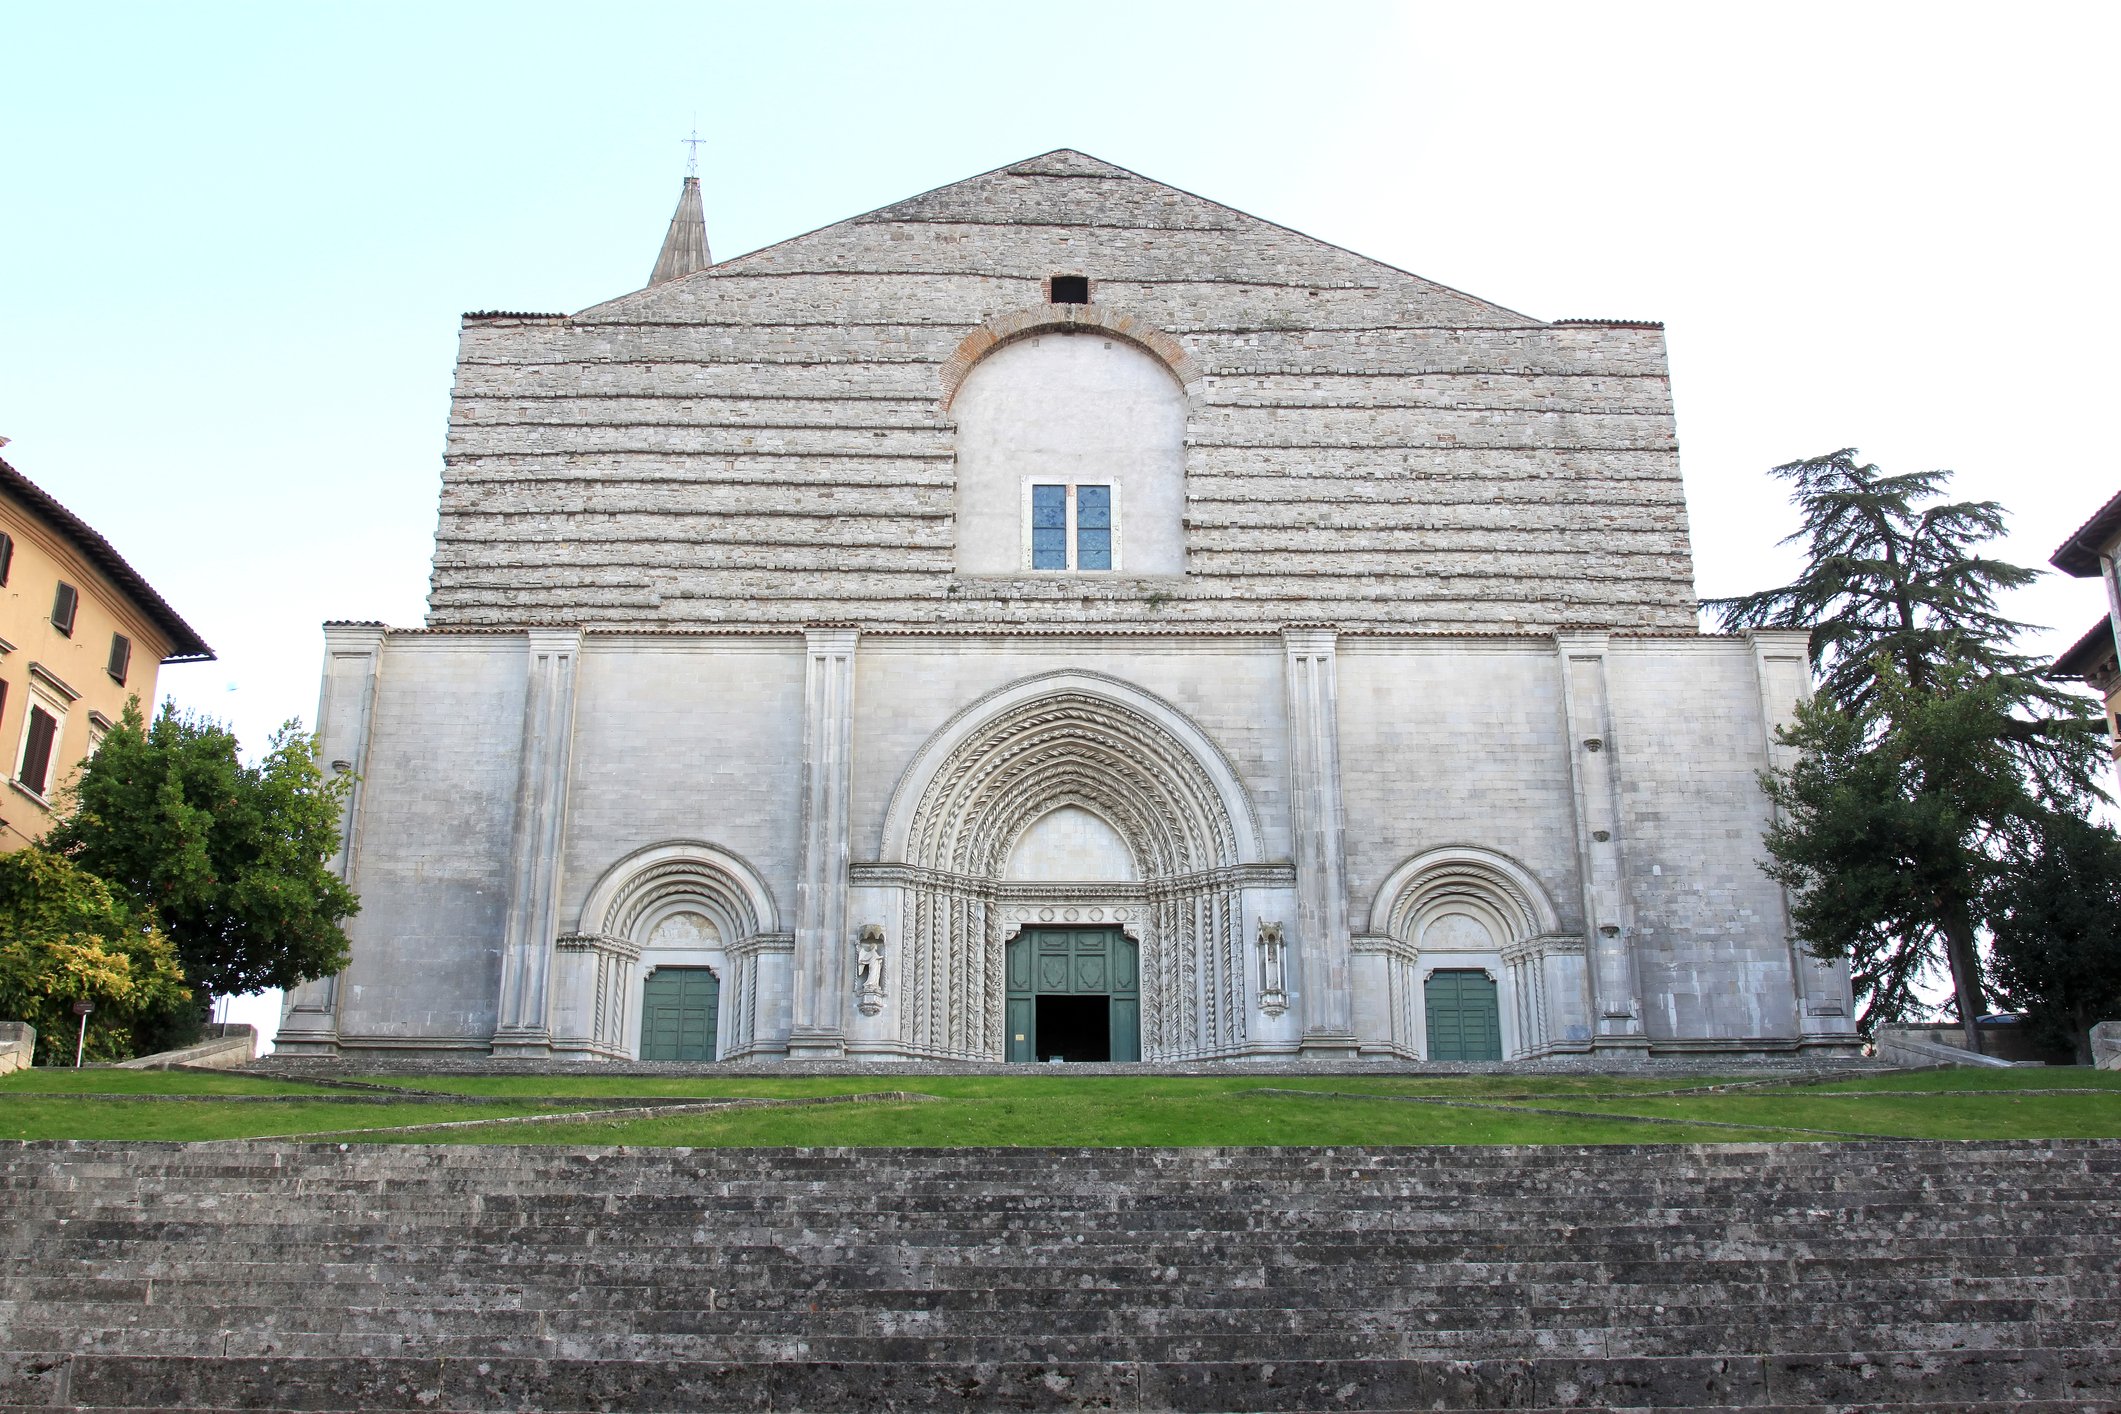 dreamstime_m_39899552 Church of San Fortunato Todi by W Cirkel.jpg